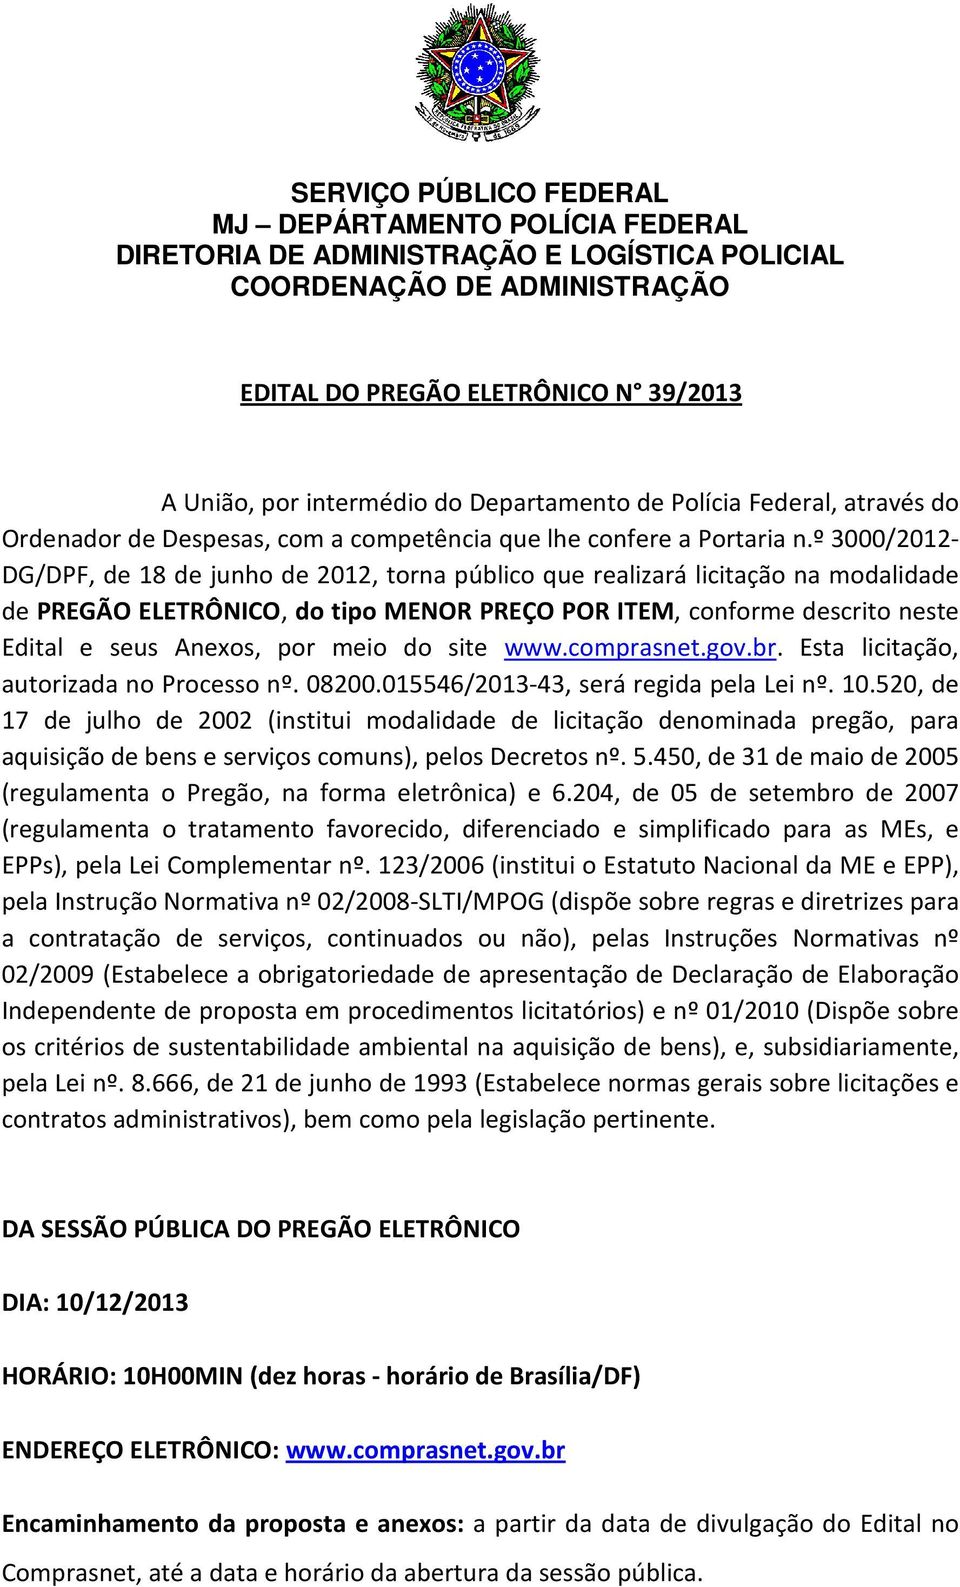 meio do site www.comprasnet.gov.br. Esta licitação, autorizada no Processo nº. 08200.015546/2013-43, será regida pela Lei nº. 10.